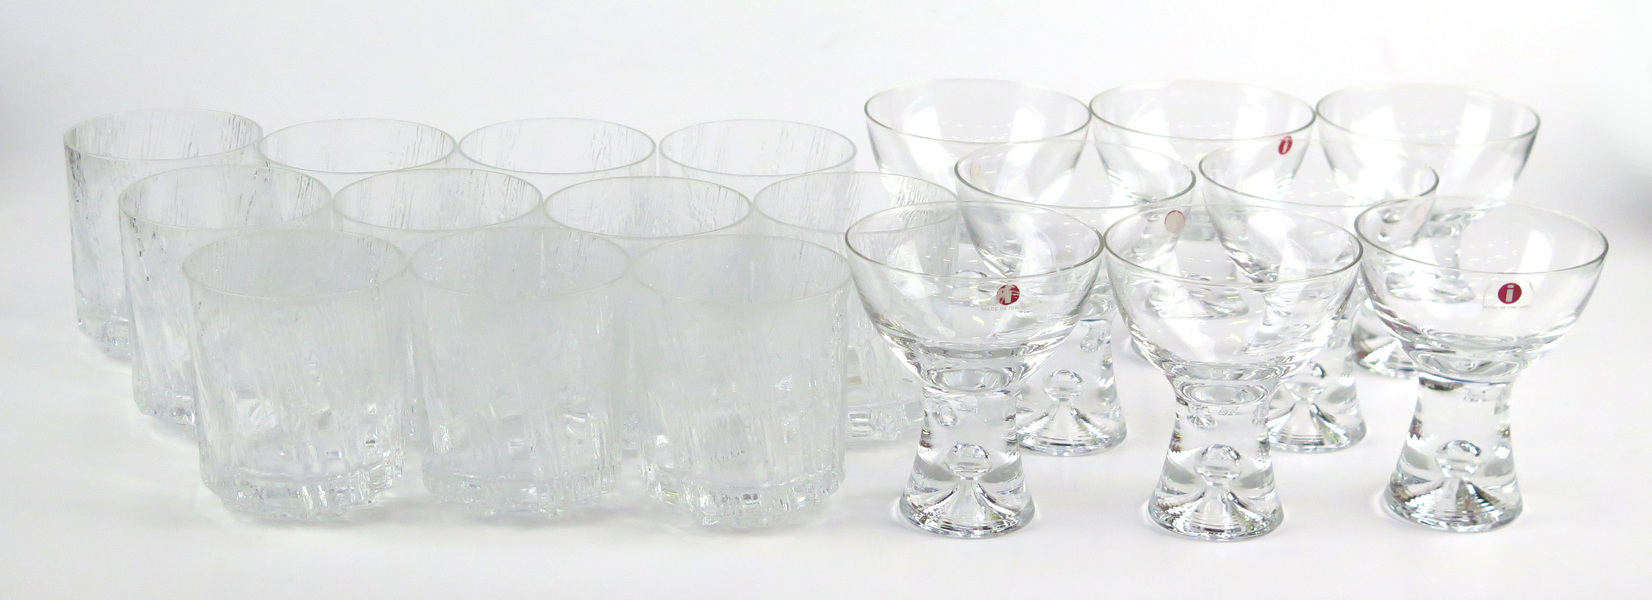 Wirkkala, Tapio för Iittala, sherryglas, 8 st, "Tapio", dekor av luftbubbla, medföljer 10 seltersglas, _16919a_lg.jpeg